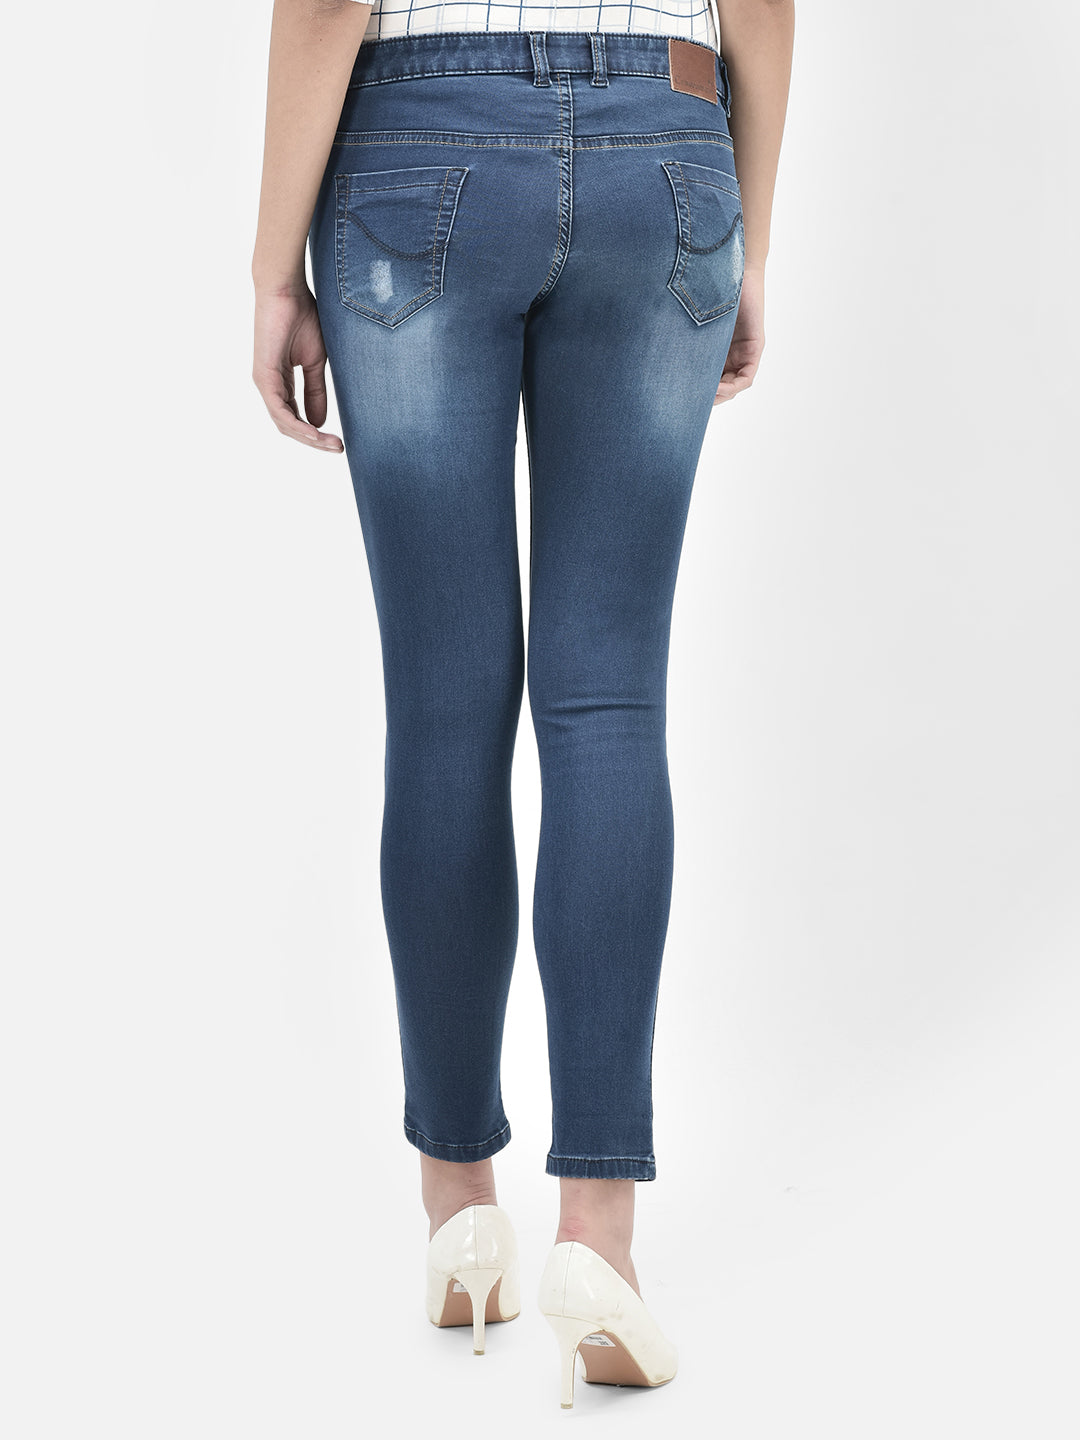 Blue Jeans-Women Jeans-Crimsoune Club